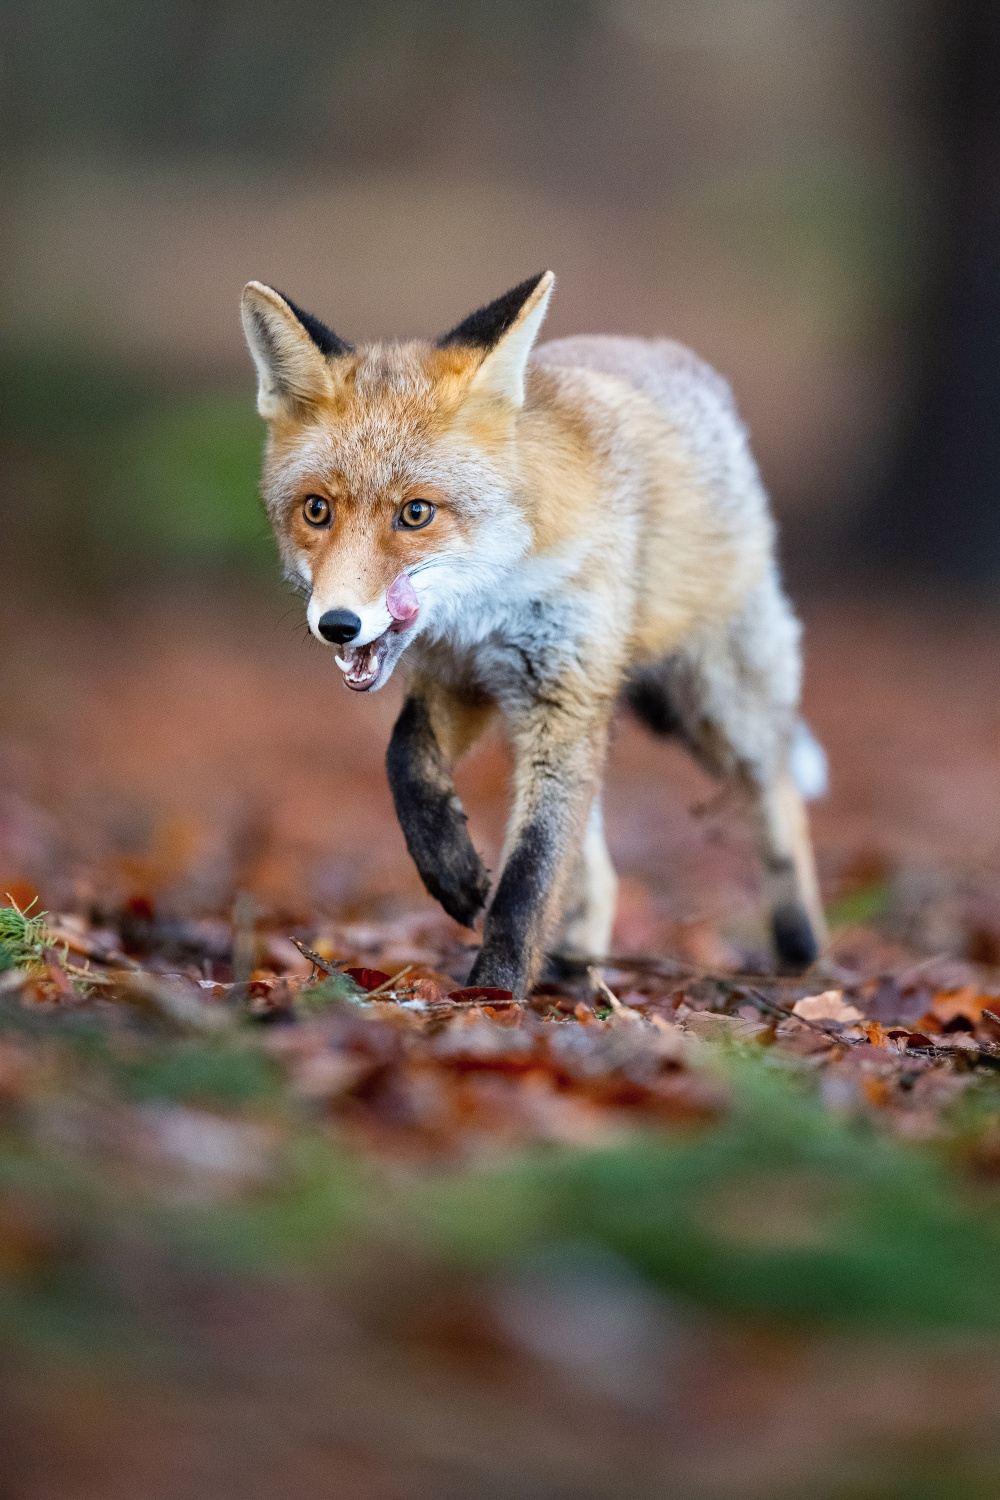 liška obecná (Vulpes vulpes) Red fox